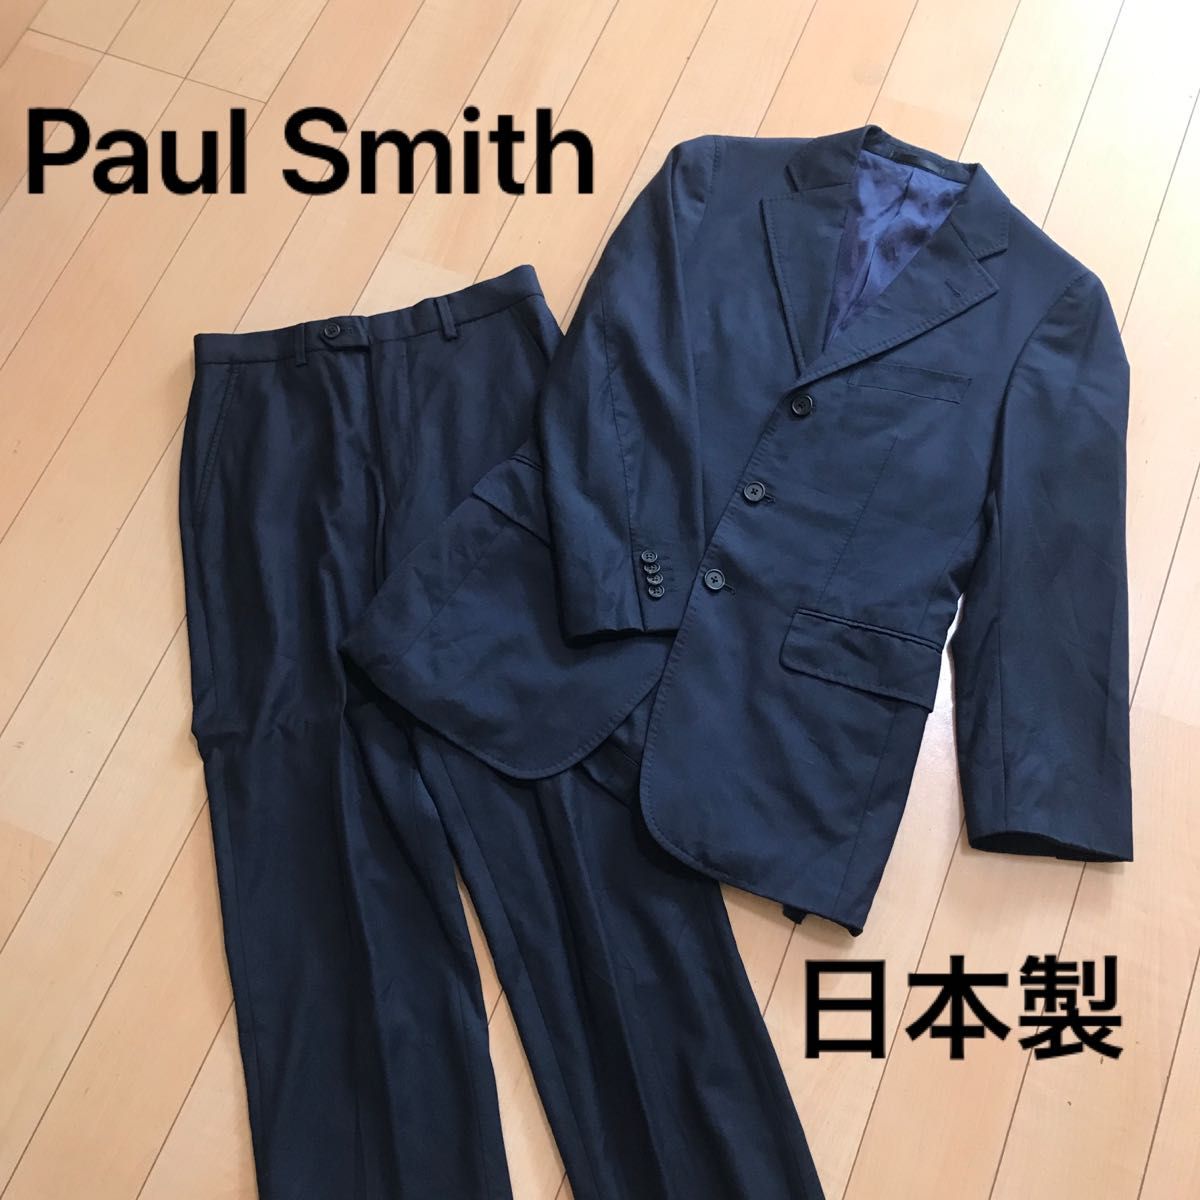 Paul Smith ポールスミス スーツ セットアップ ネイビー Sサイズ